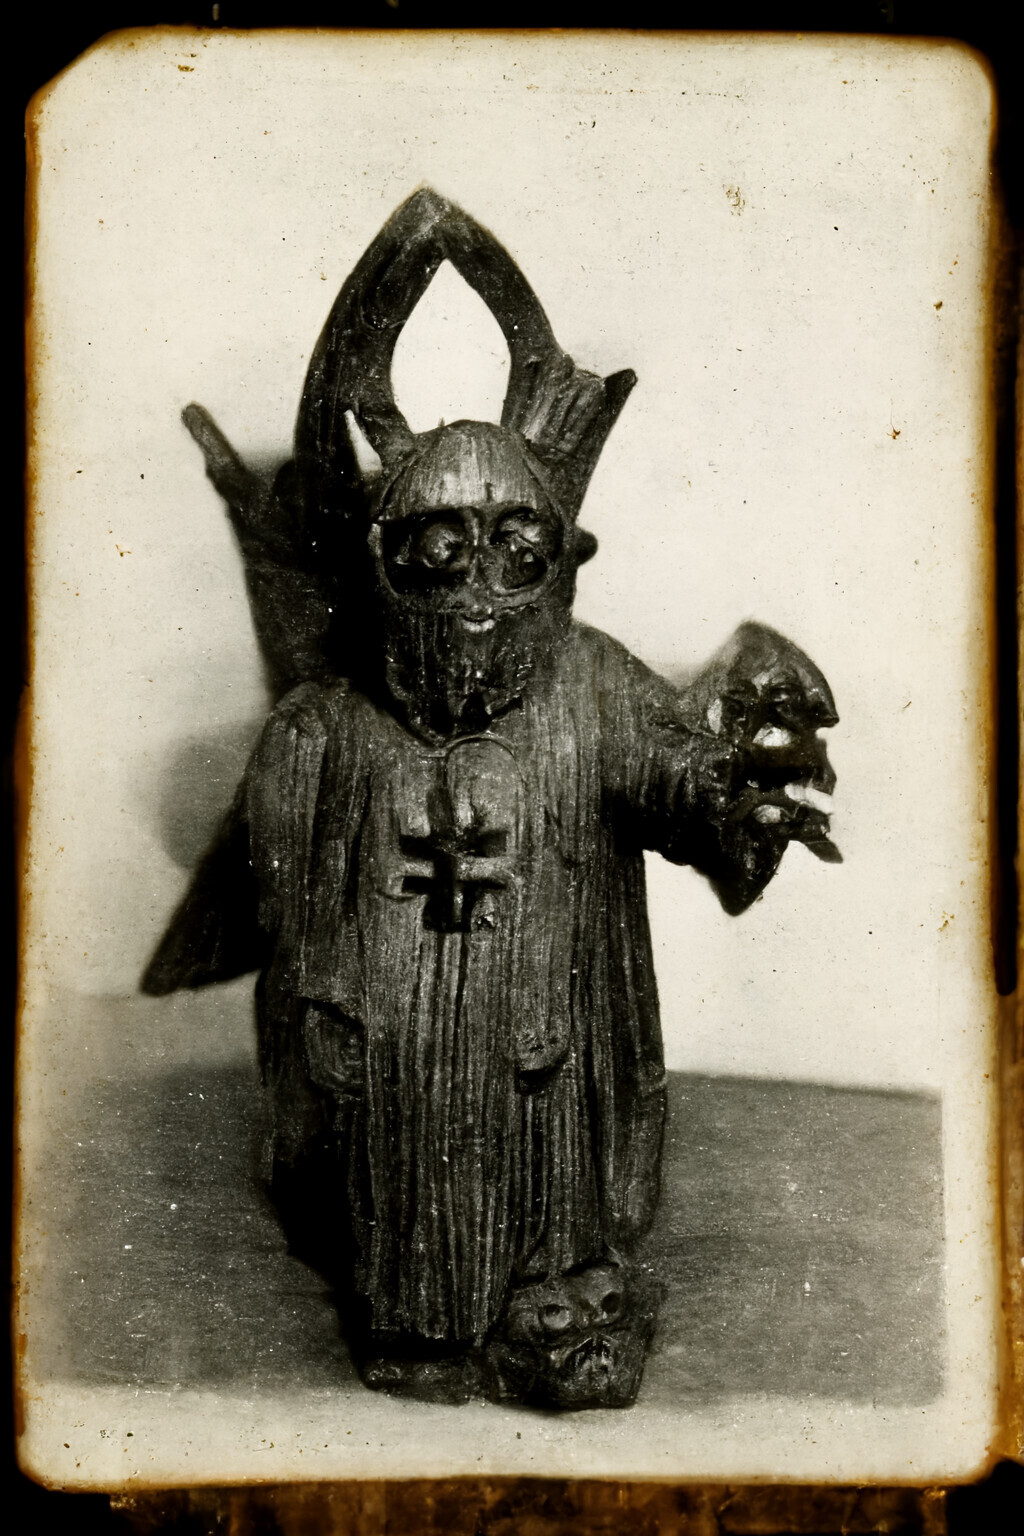 The Goat King
c. 1881
Photograph
'Sacrificial votive figurine'